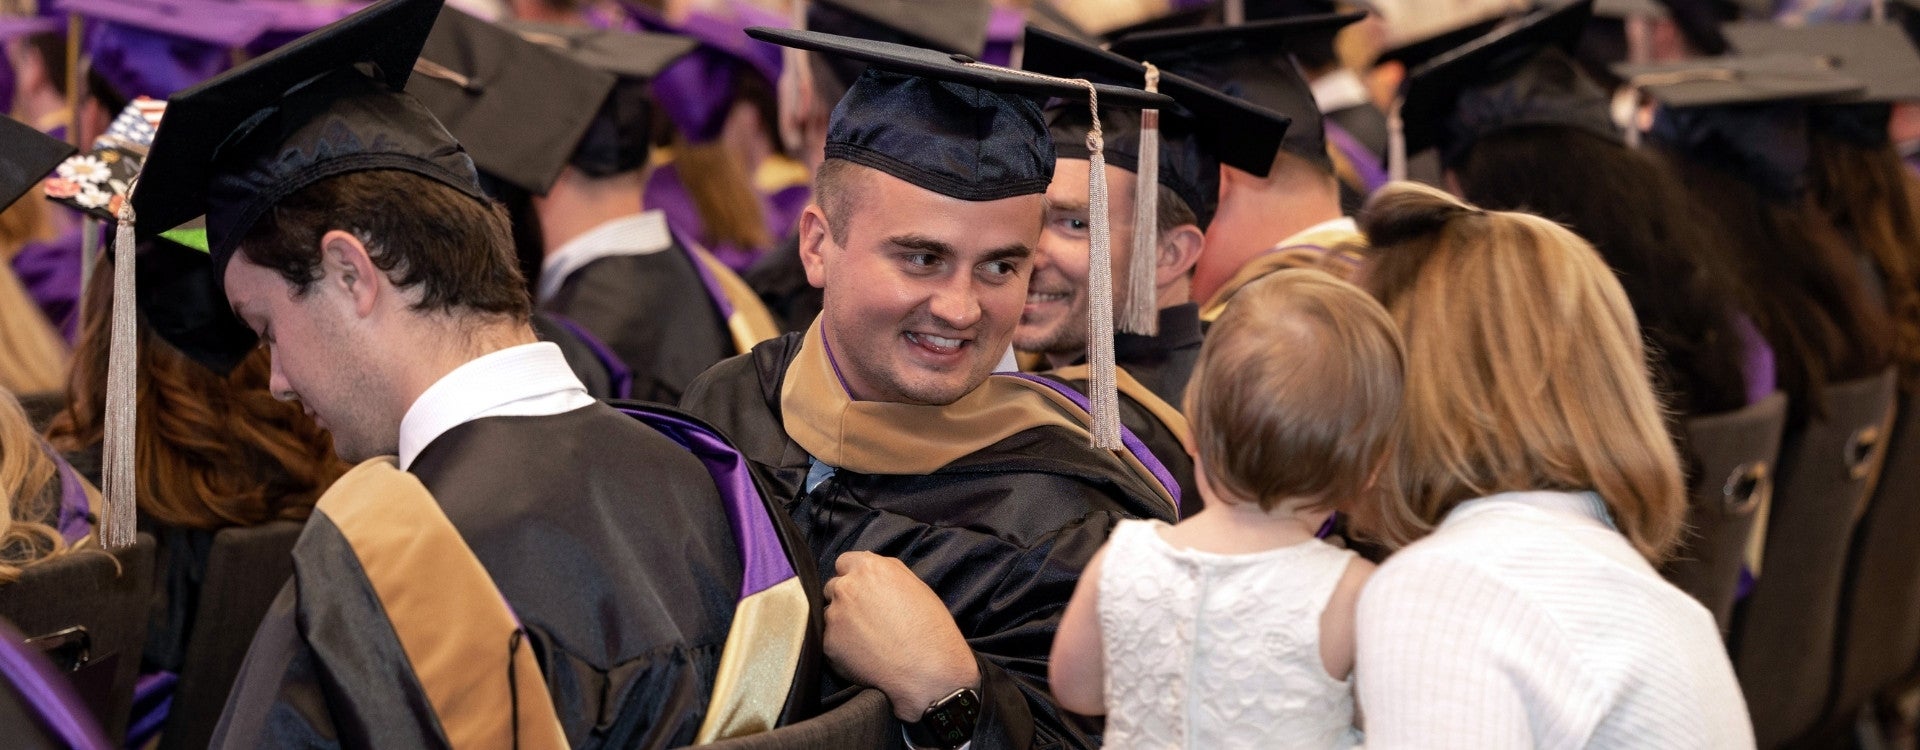 COB student looks at his child during graduation ceremonies